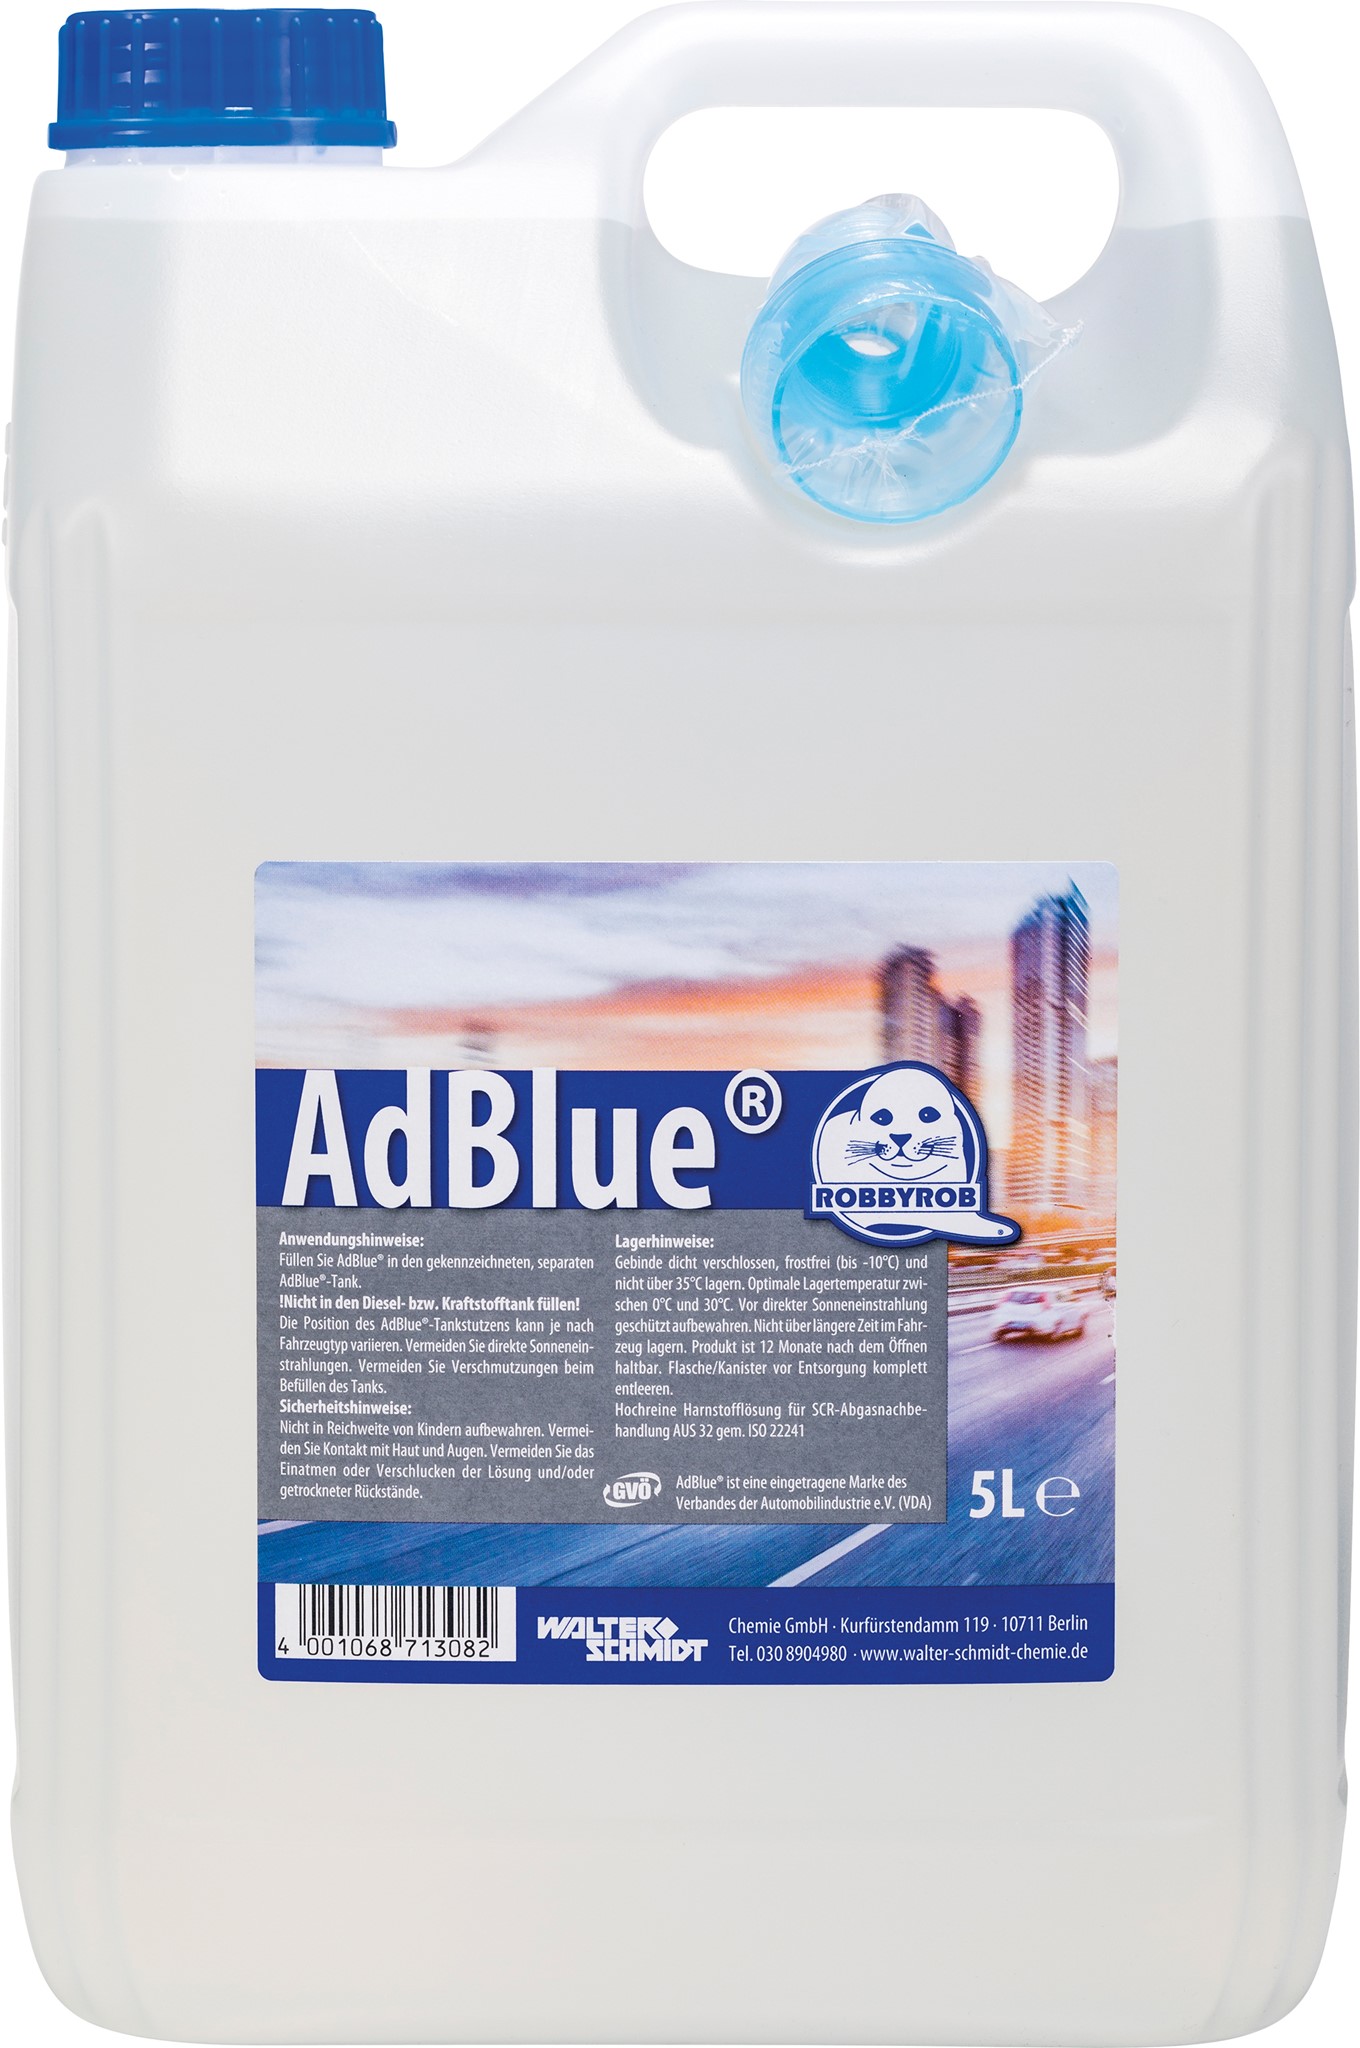 AdBlue Robbyrob 5 L Kanister mit Einfülls online kaufen - im van beusekom  Onlineshop